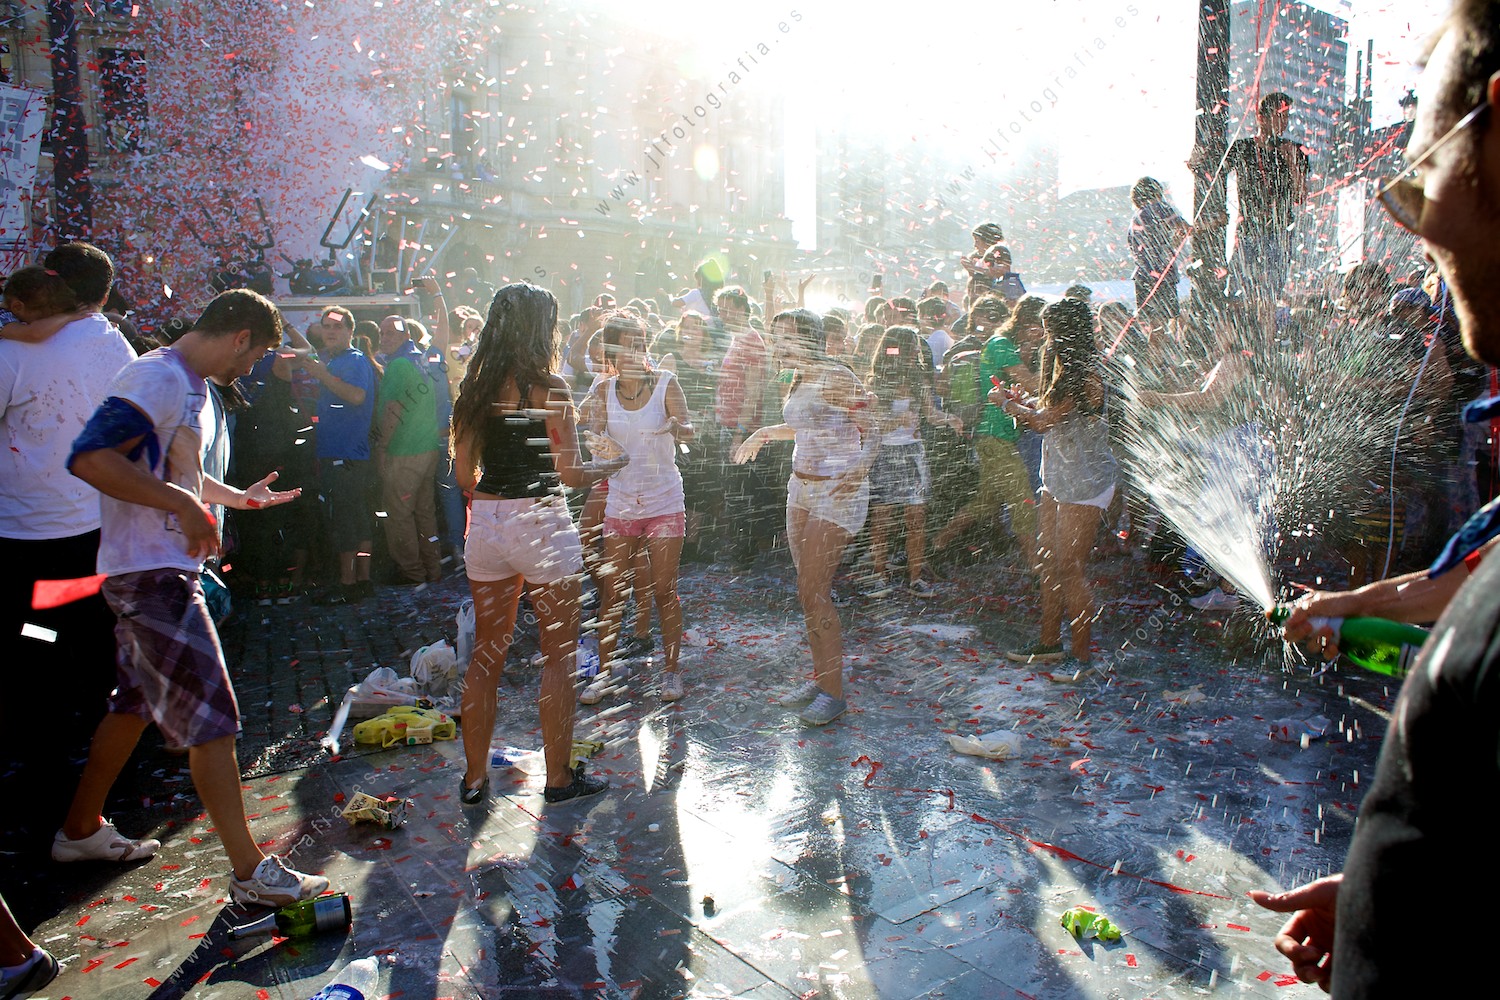 Aste Nagusia de Bilbao, jóvenes celebrando con sidra al aire en el chupinazo